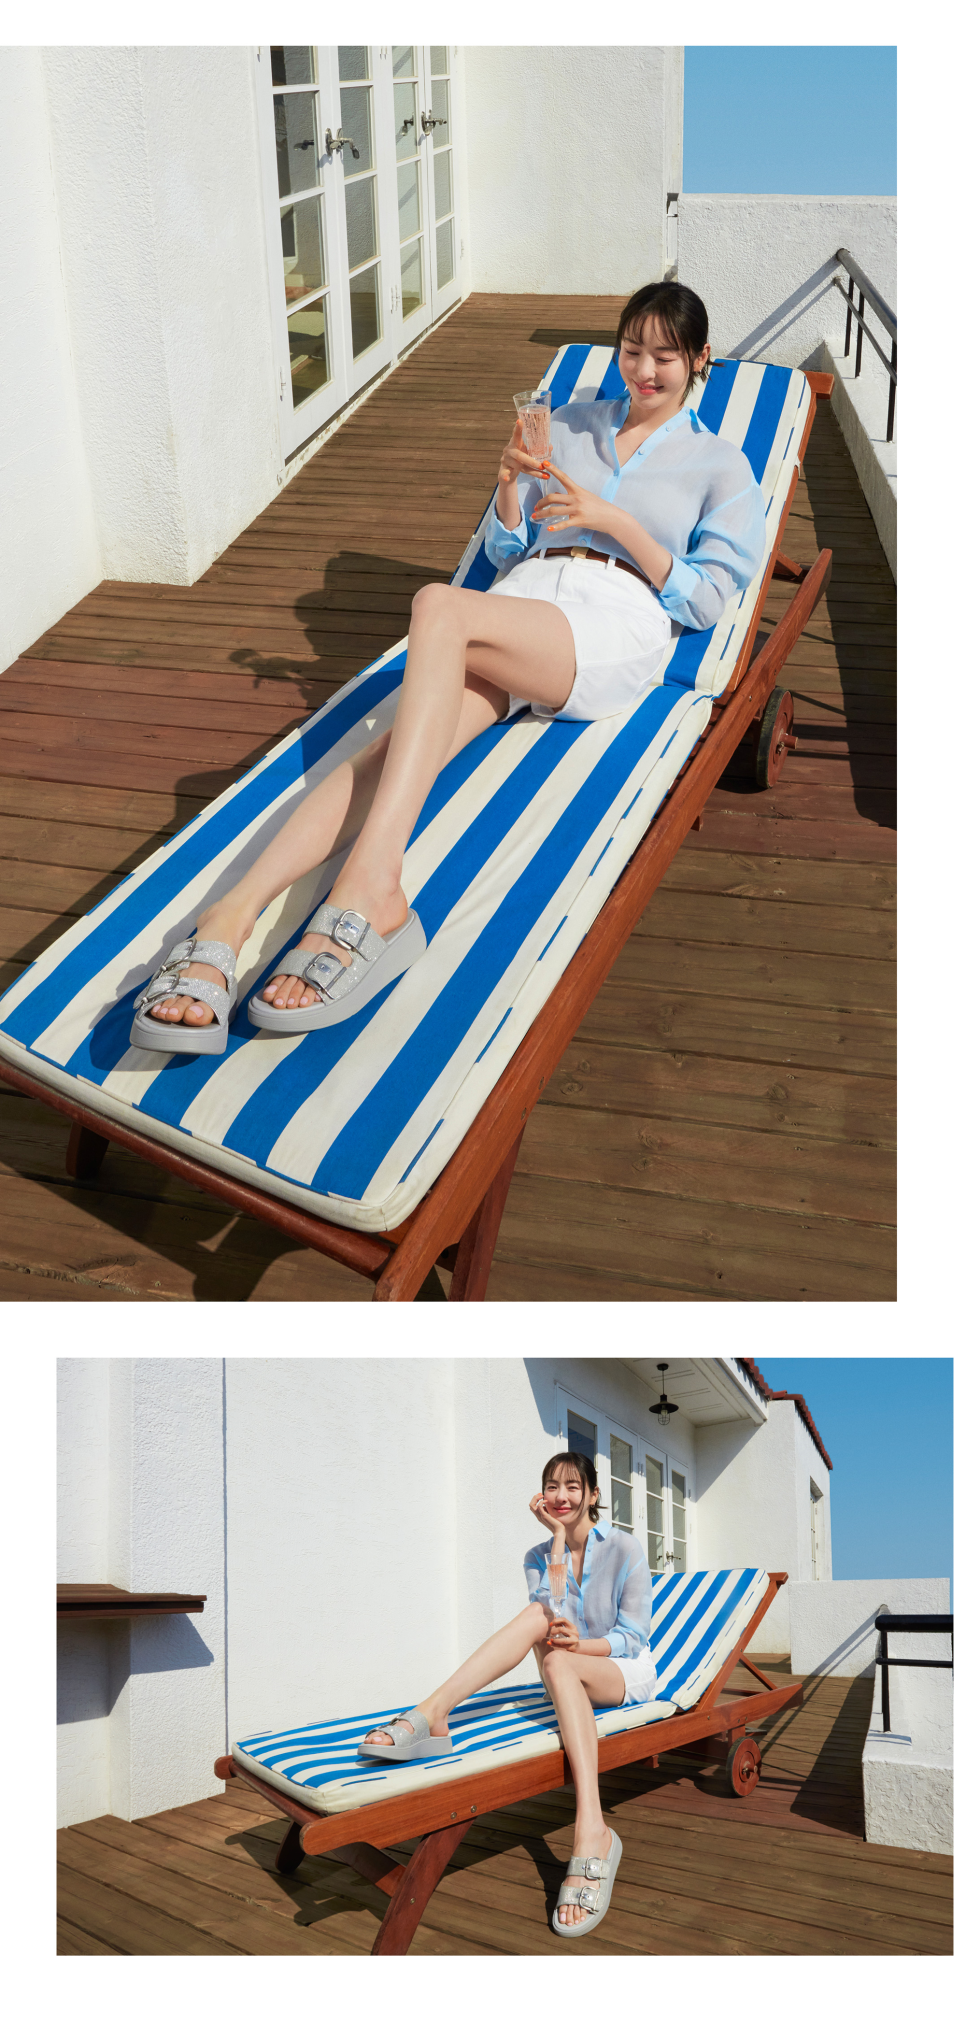 여자 신발 브랜드 발편한 핏플랍 이다희 패션 속 여름 슬리퍼 여성 샌들 추천